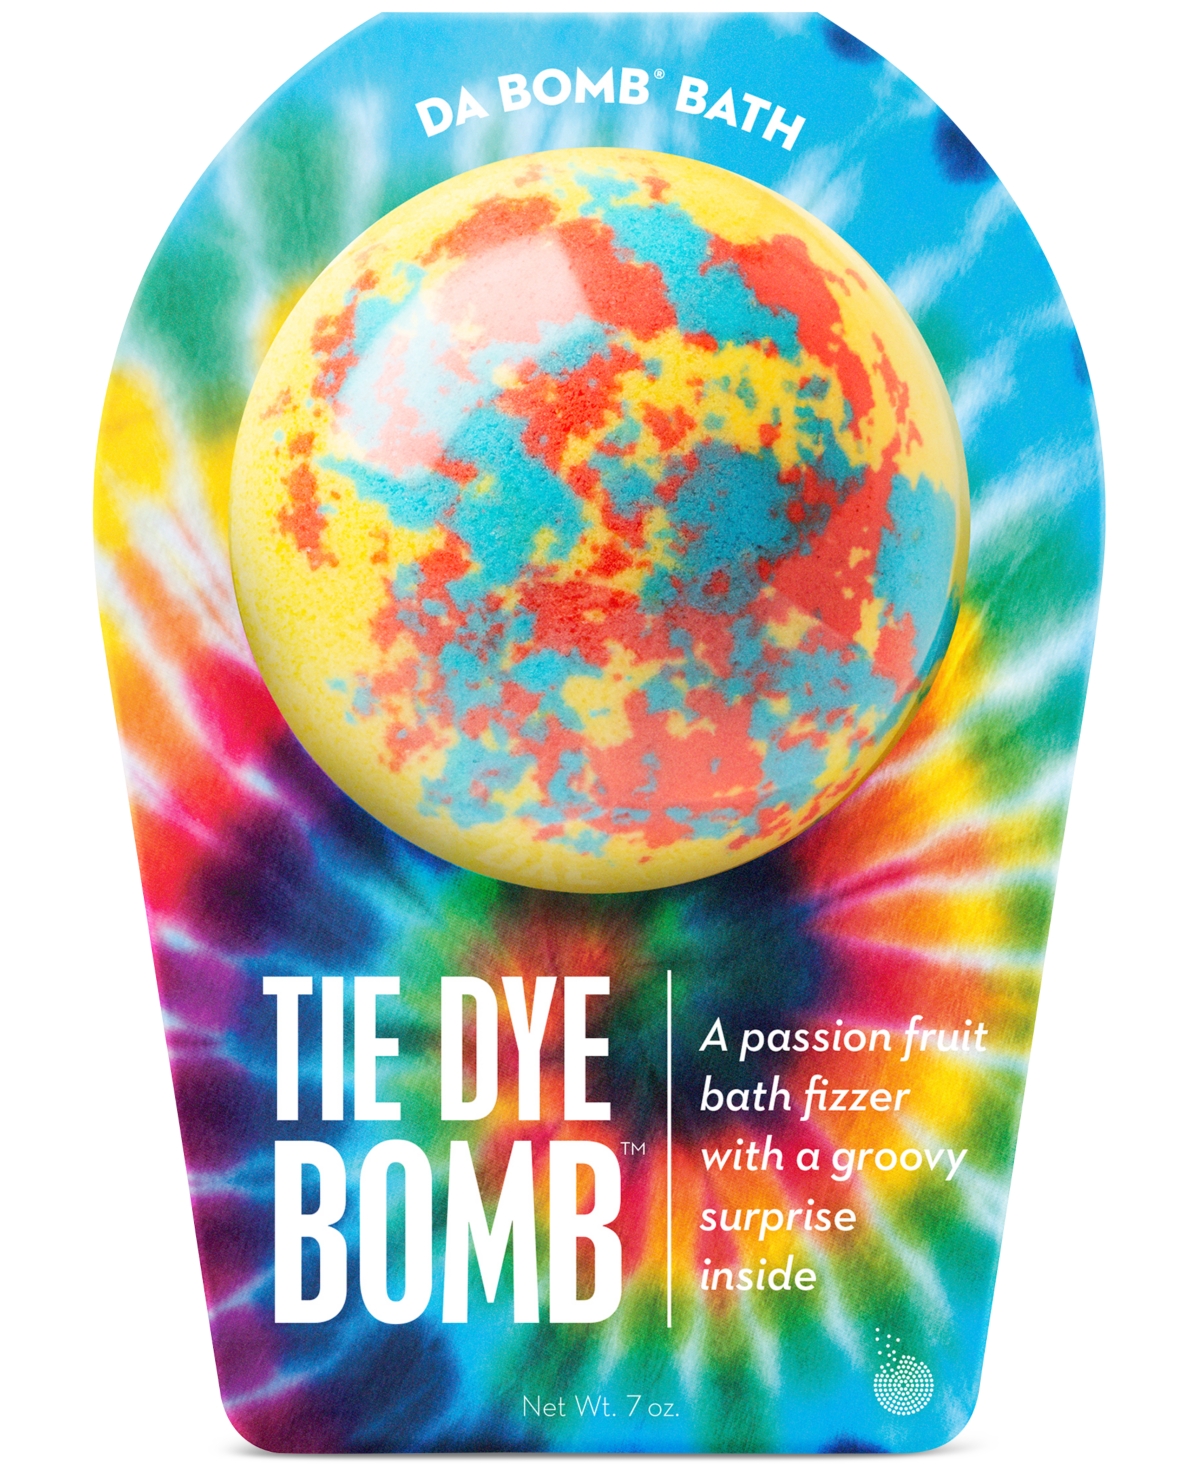 Tie Dye Bath Bomb, 7 oz. - Tie Dye Bomb